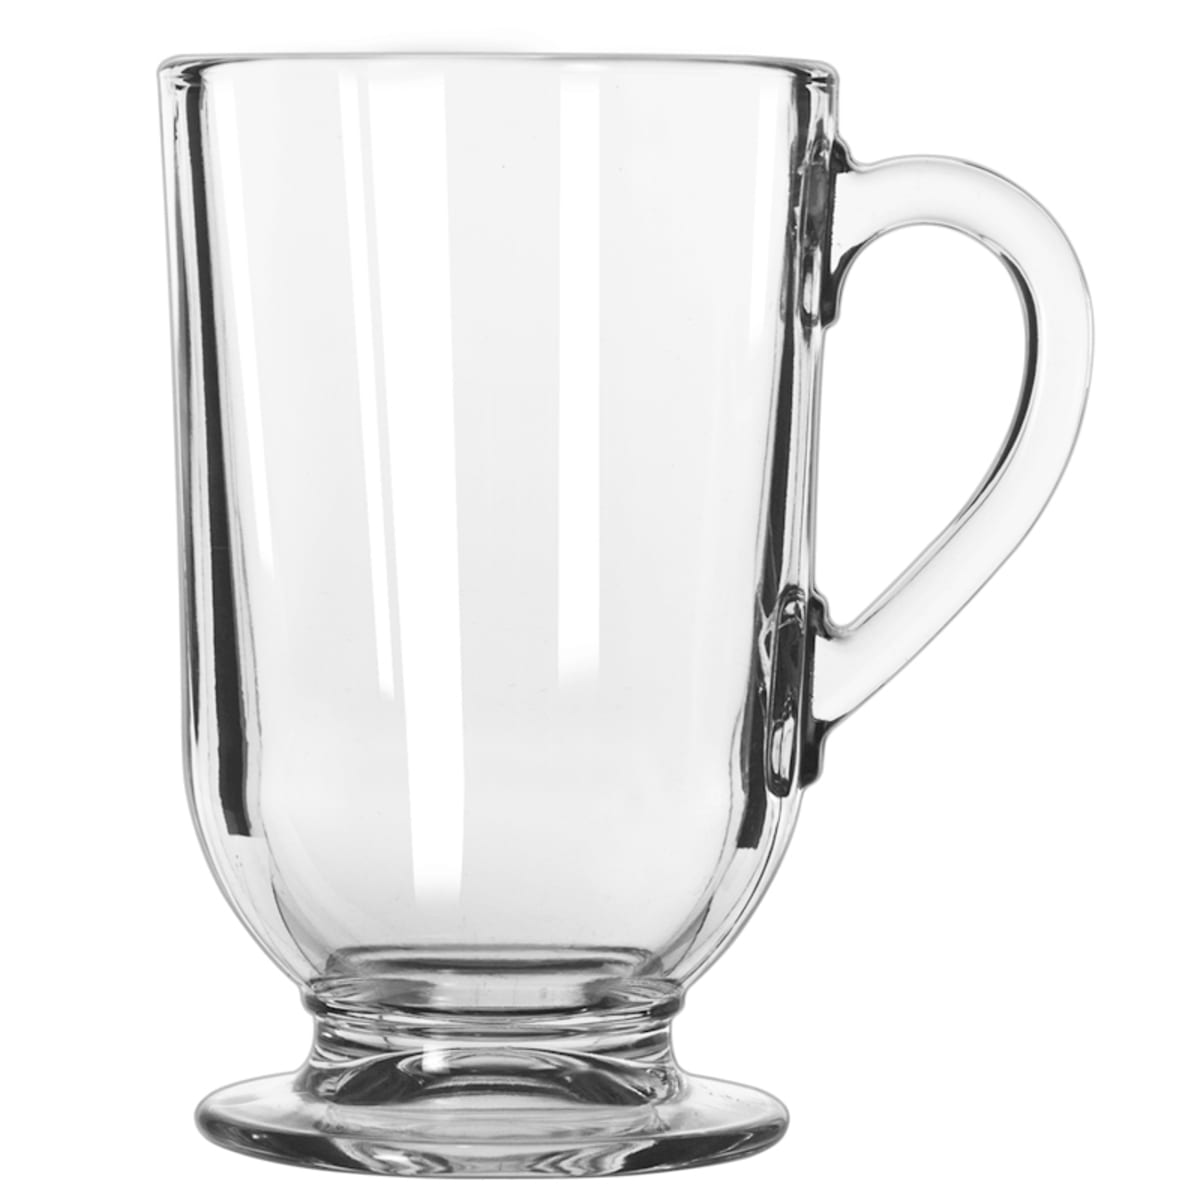 Libbey 5201 10 oz Clear Glass Coffee Mug